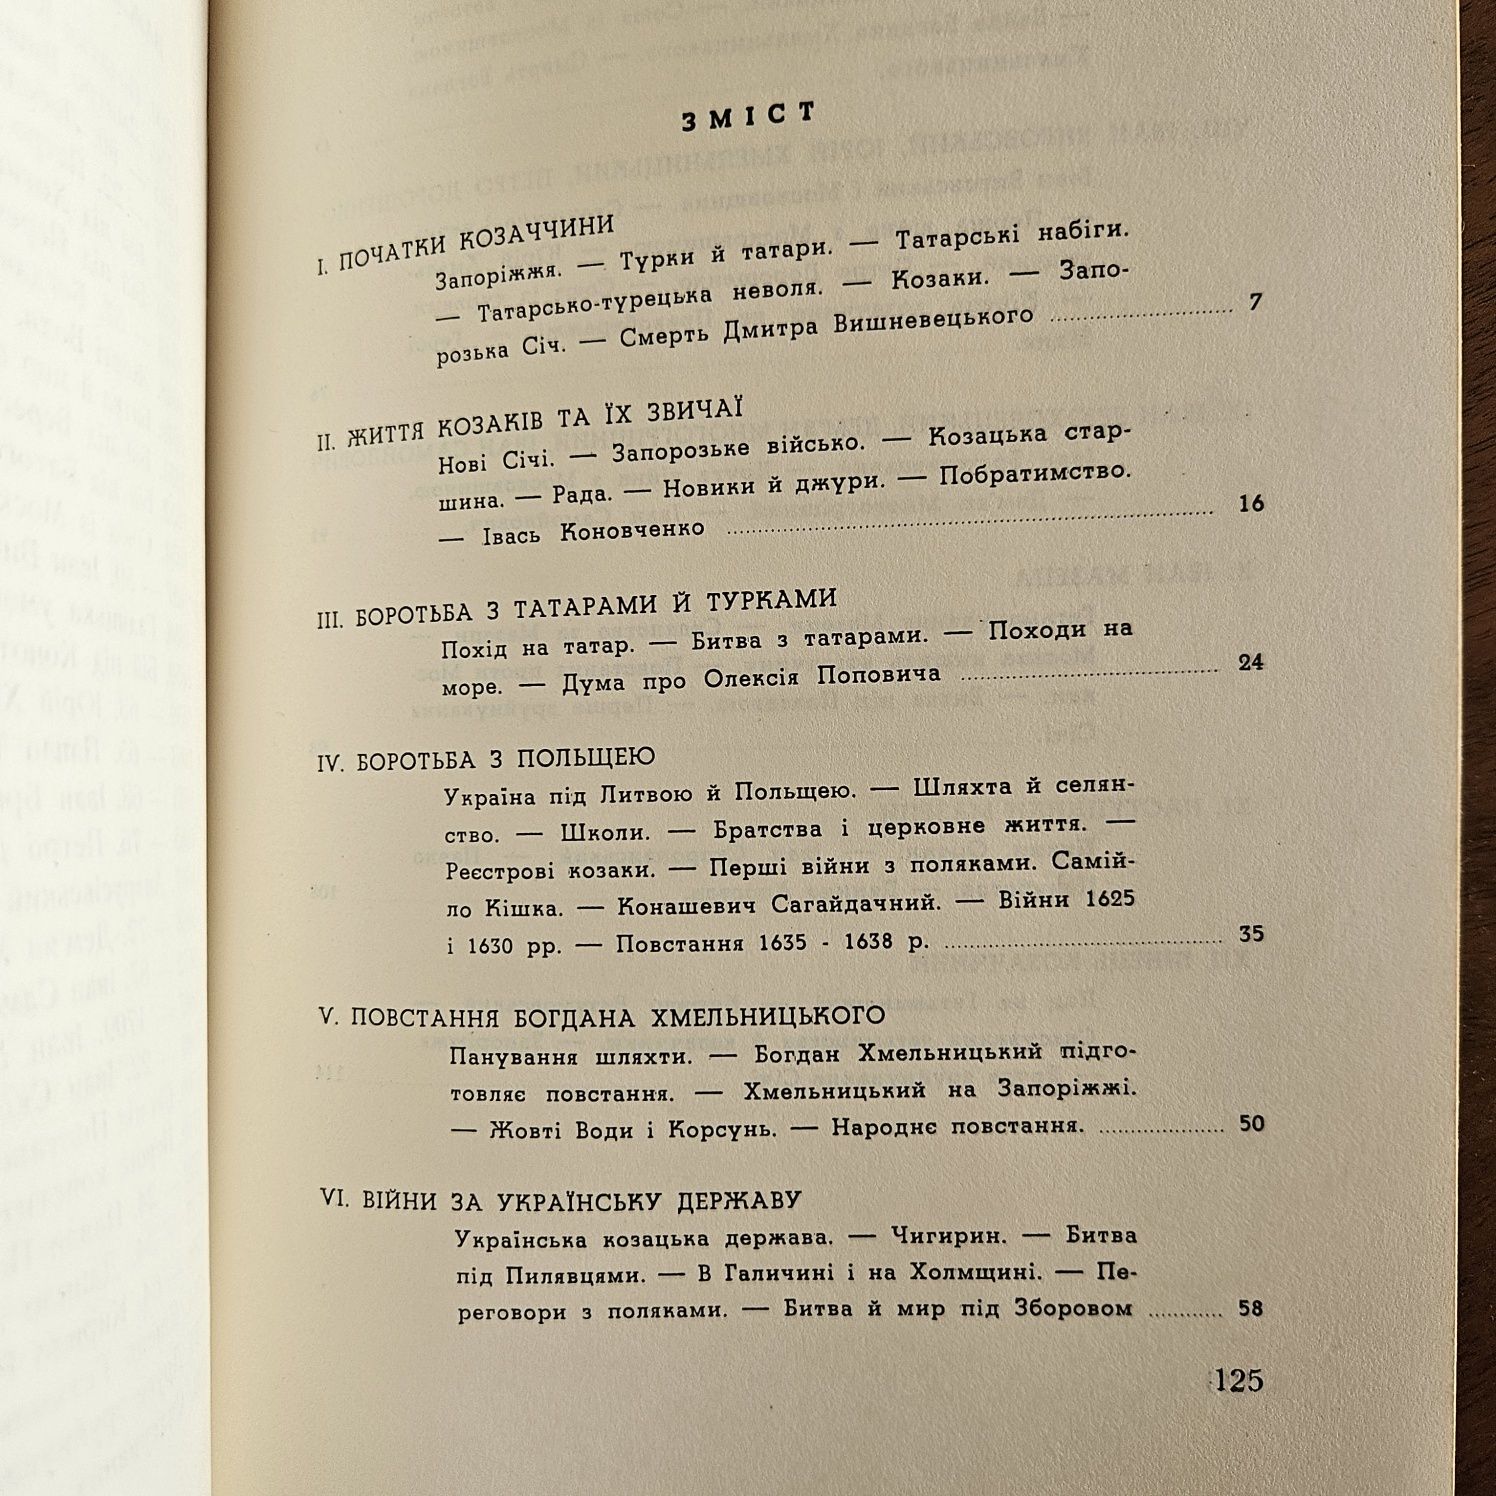 "Слава не поляже.  Козаччина ", книжка 3, 1961р.